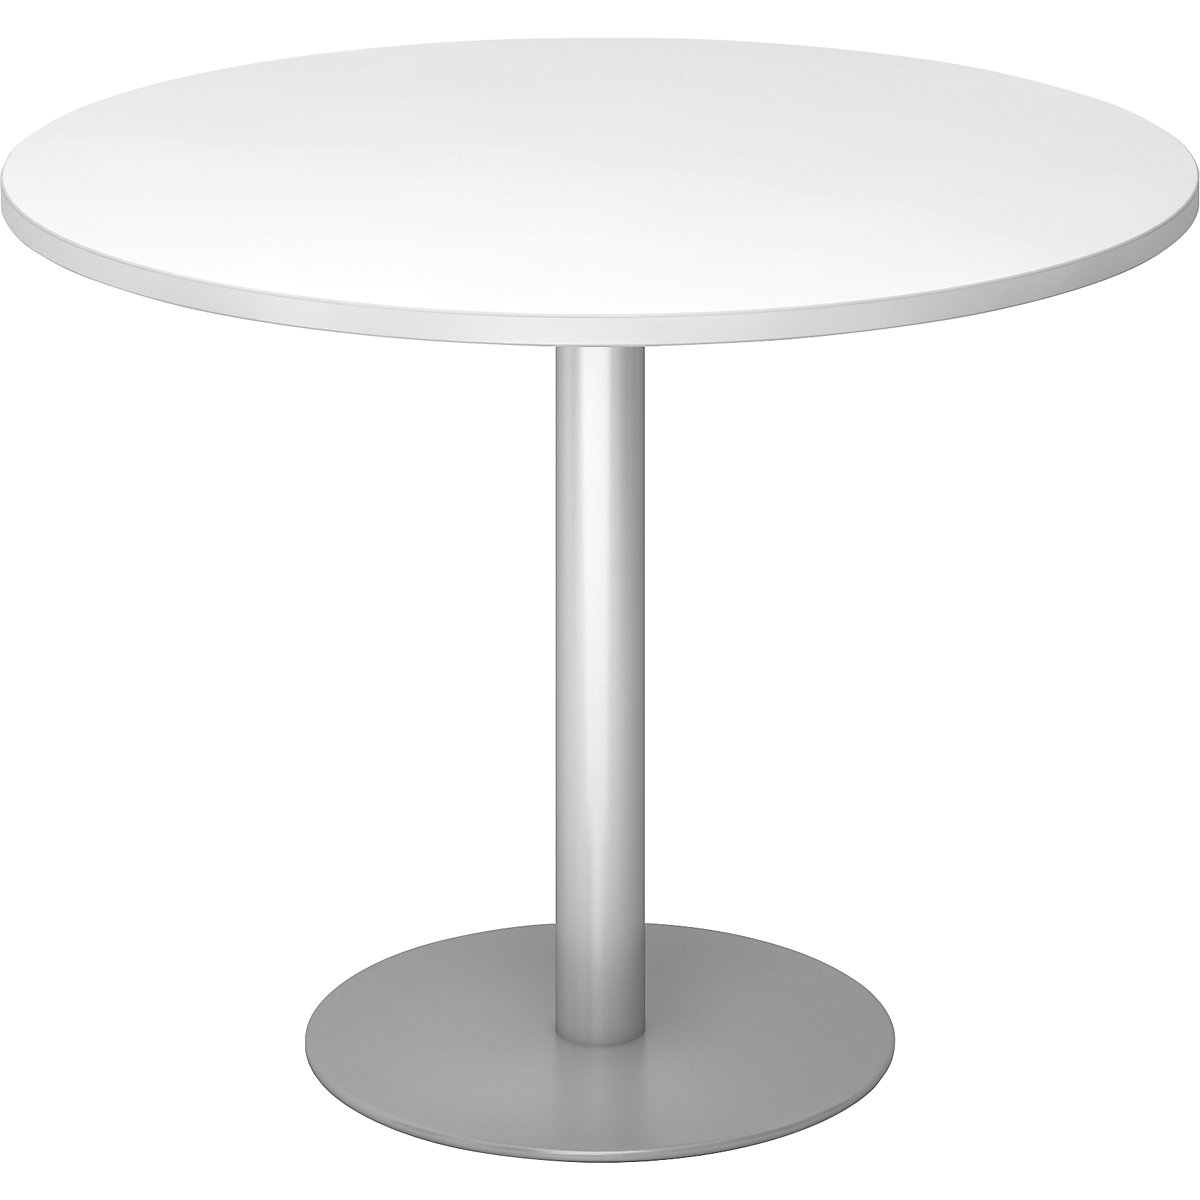 Jednací stůl, Ø 1000 mm, výška 755 mm, stříbrný podstavec, deska bílá